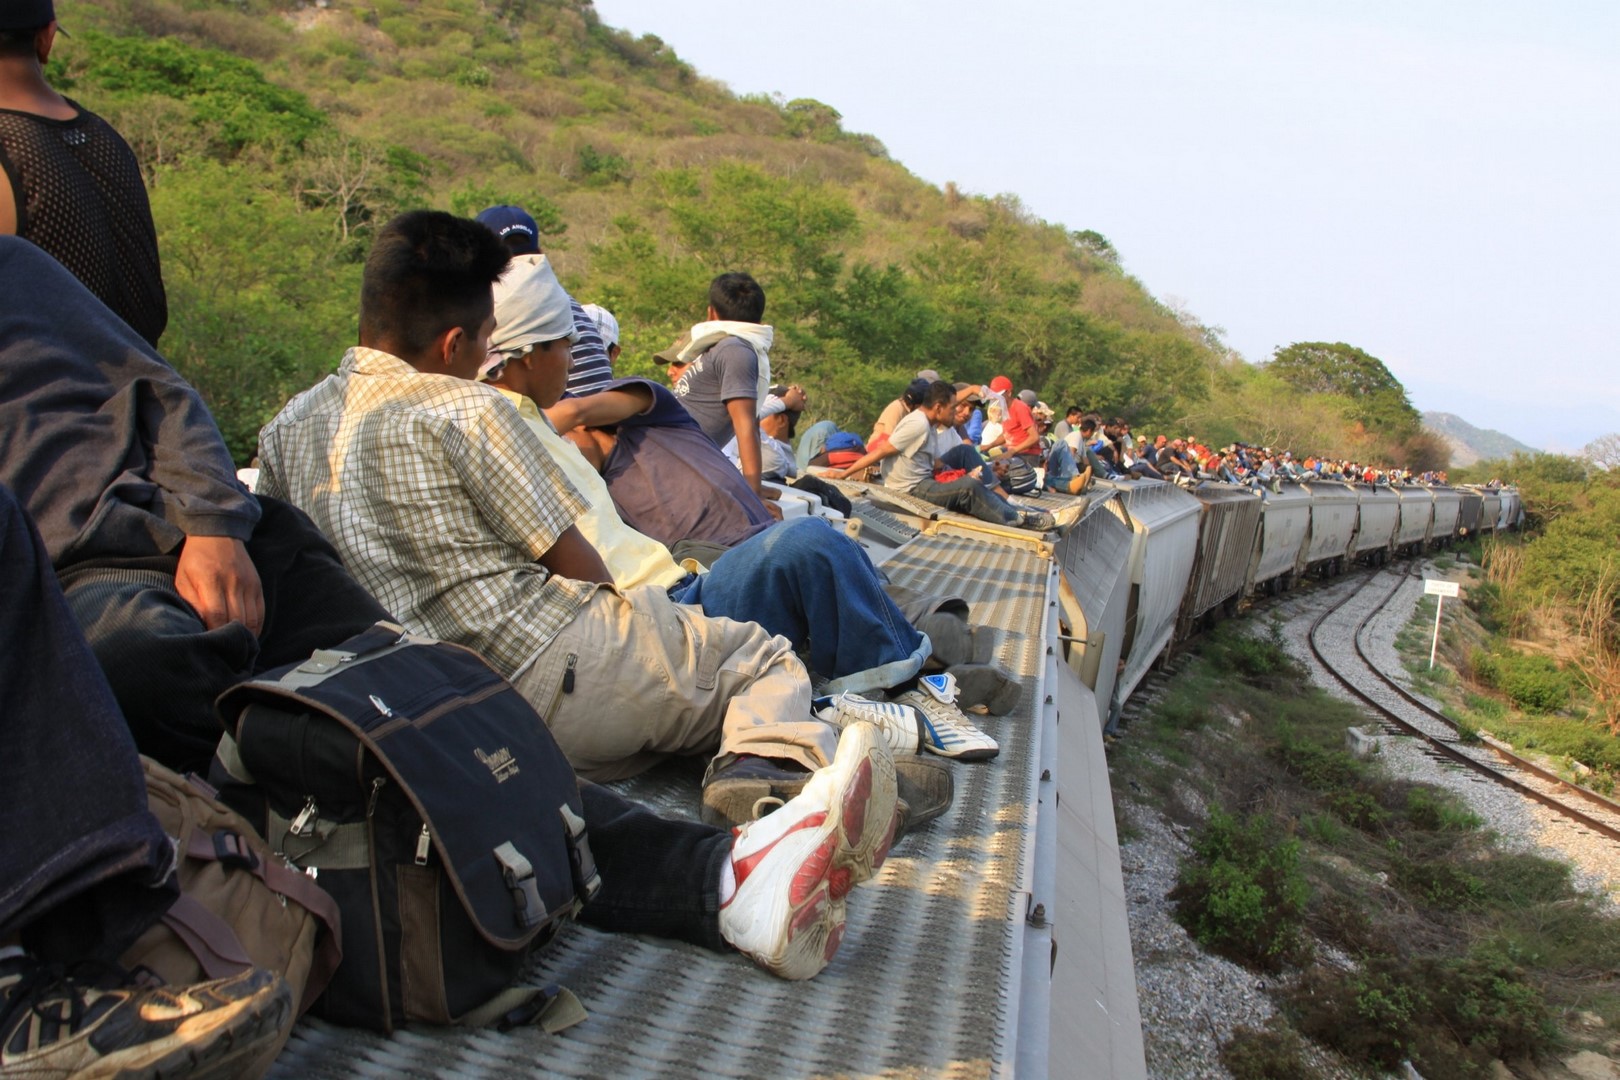 México asesora a sus migrantes en EU contra abusos laborales